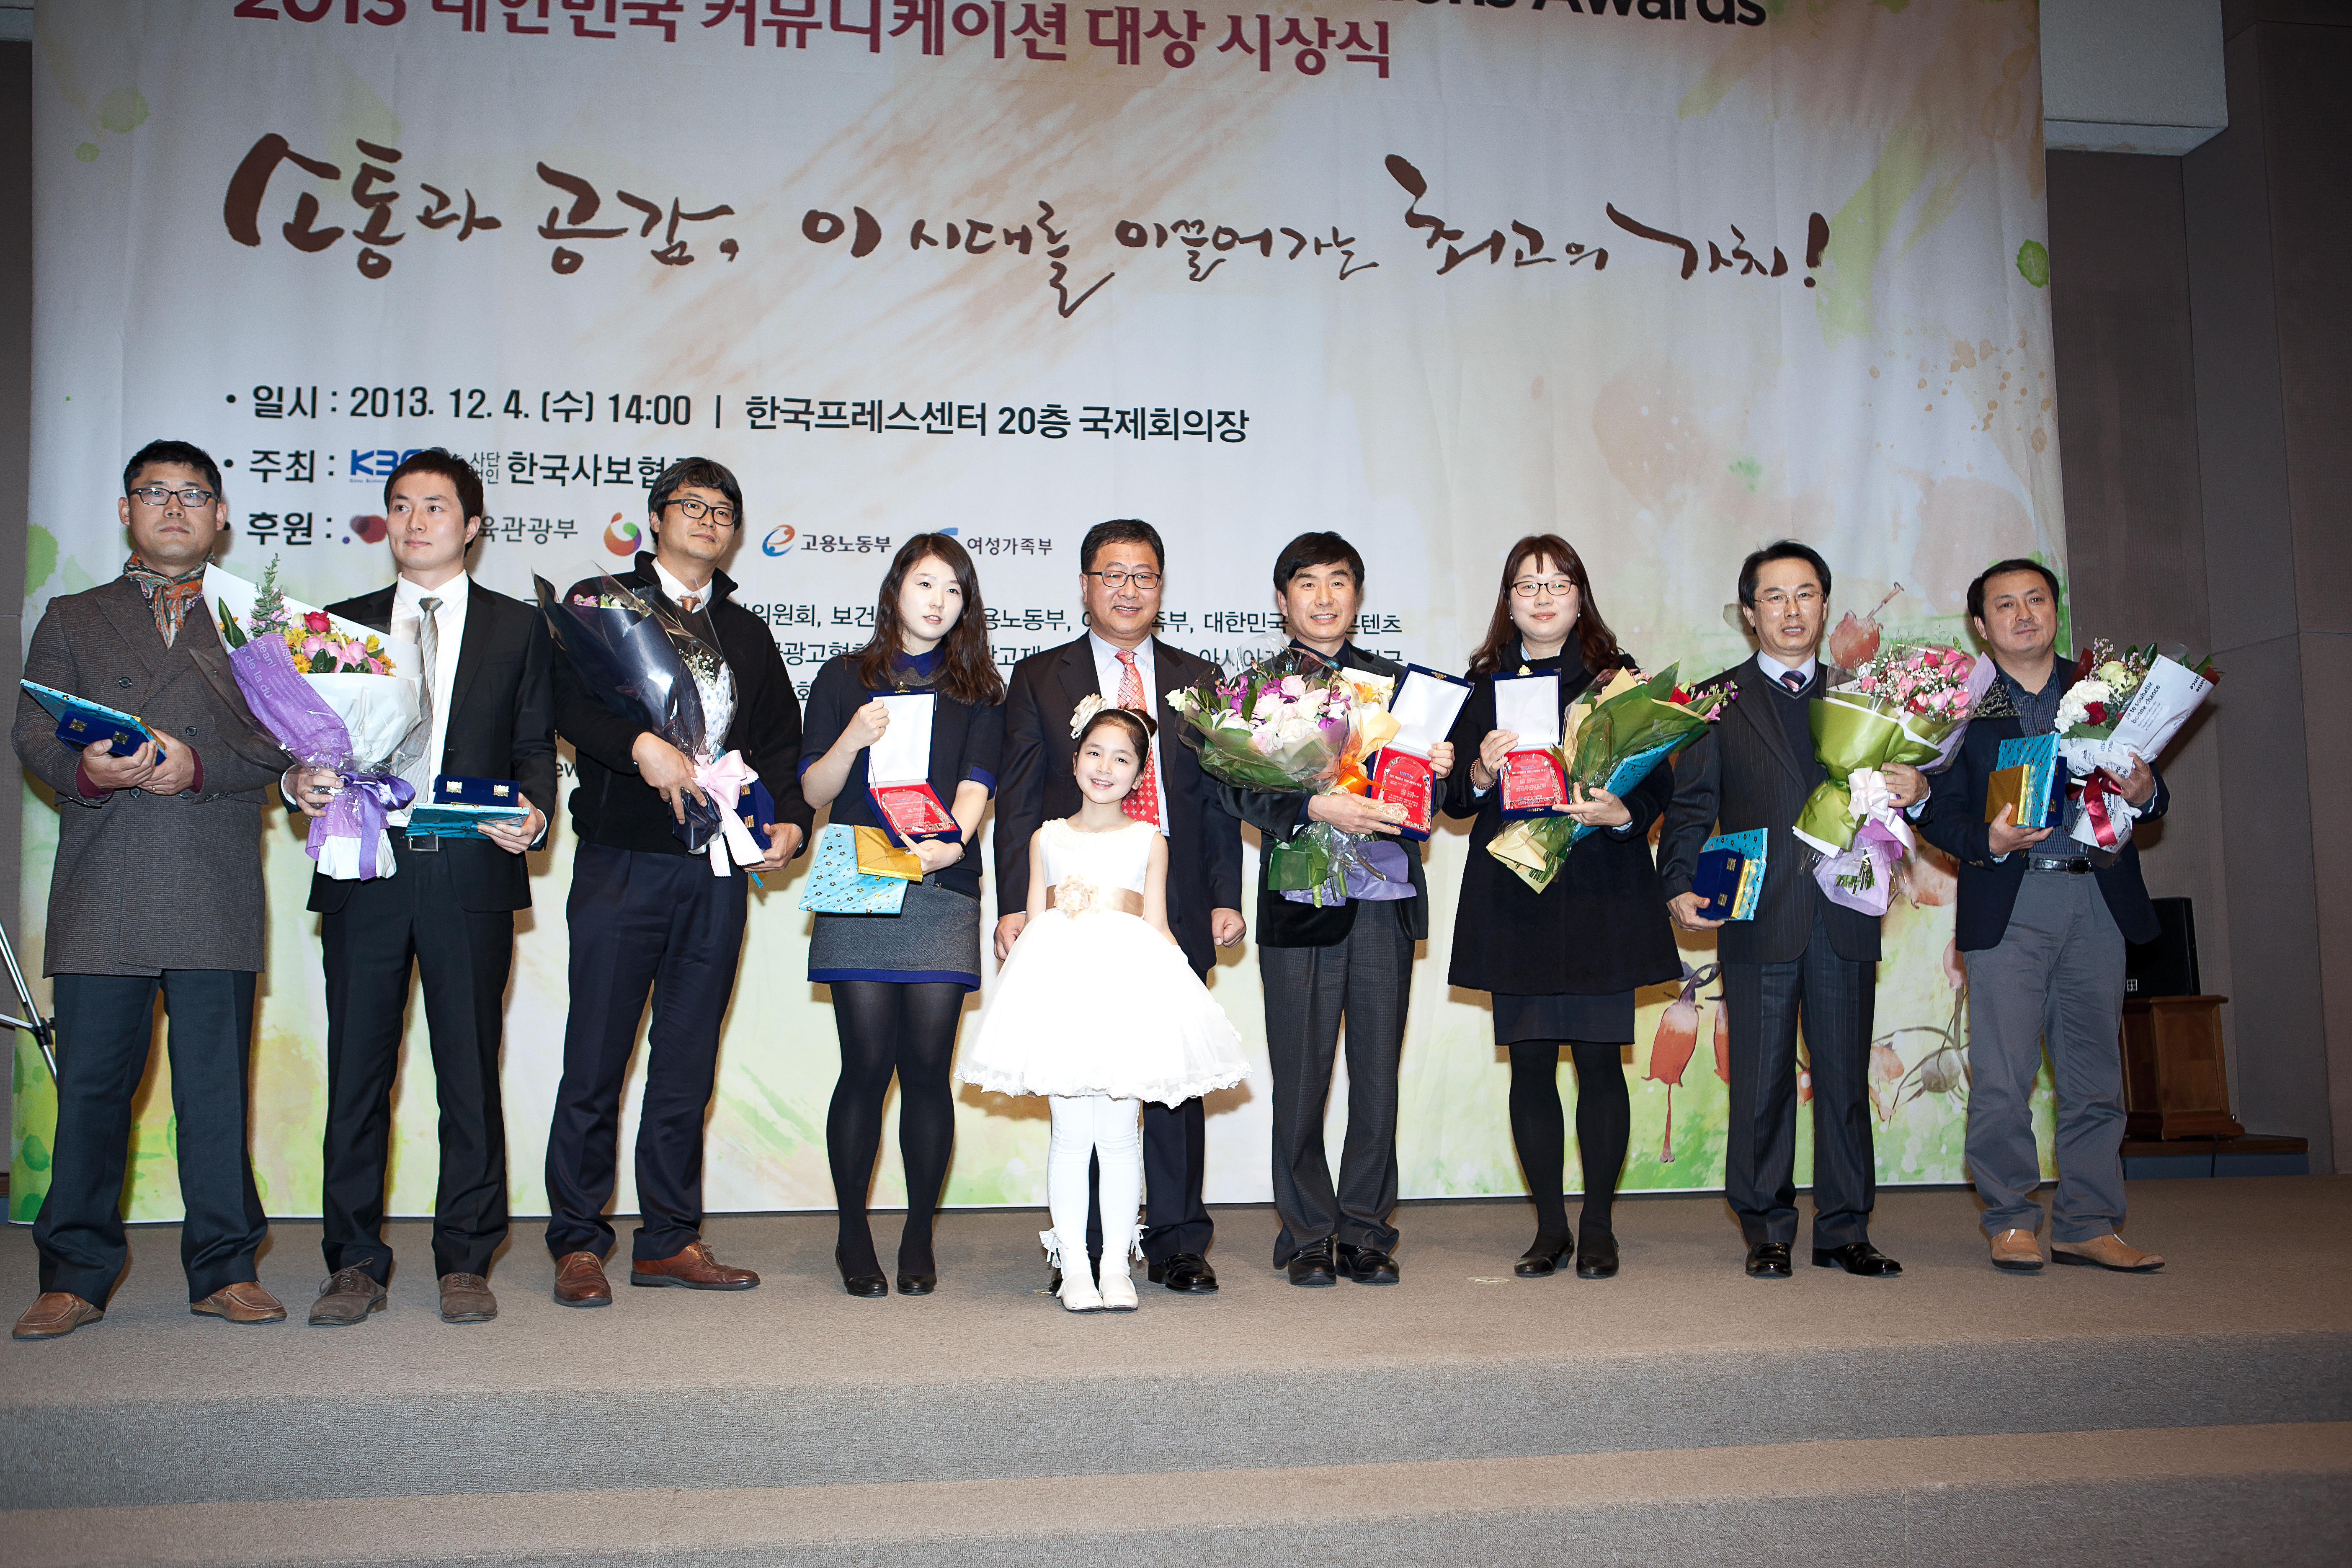 한국제지, 2013 커뮤니케이션대상 기획 대상, 우수홍보물 대상 수상